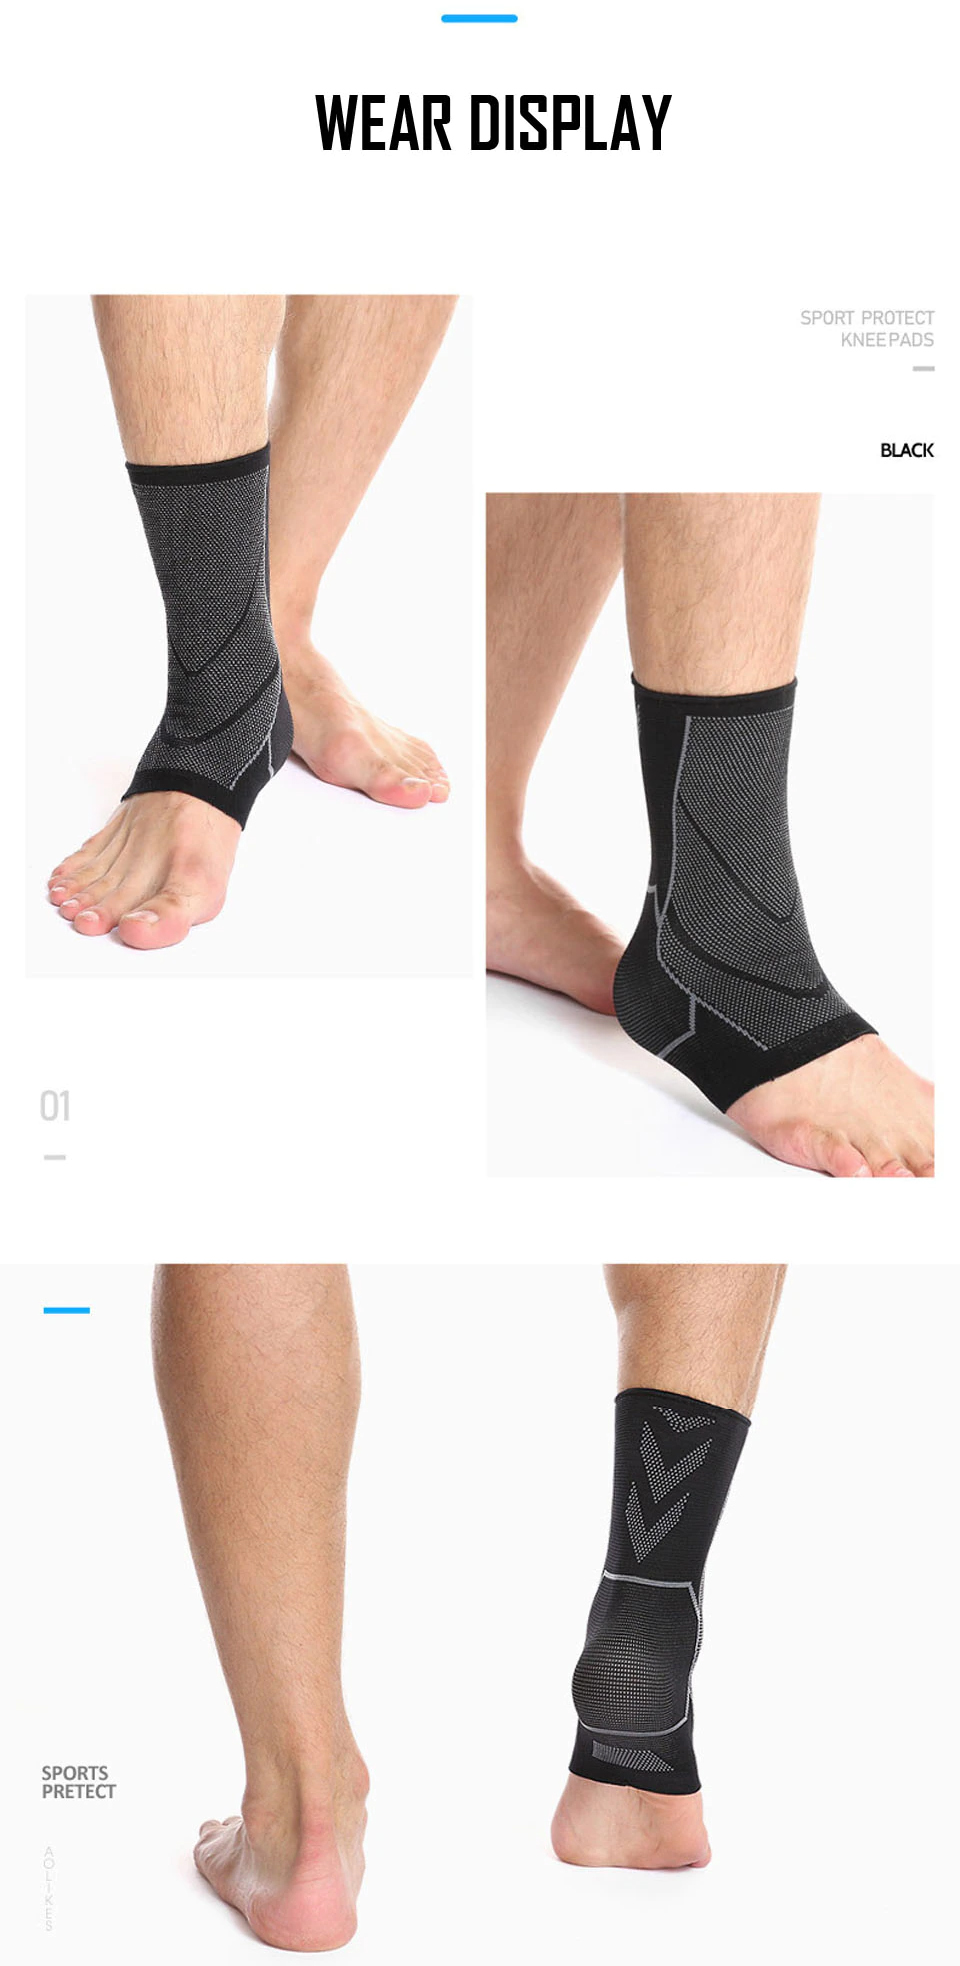 Bộ 2 bó gót chống lật cổ chân AOLIKES A-7137-2 Elastic weave ankle